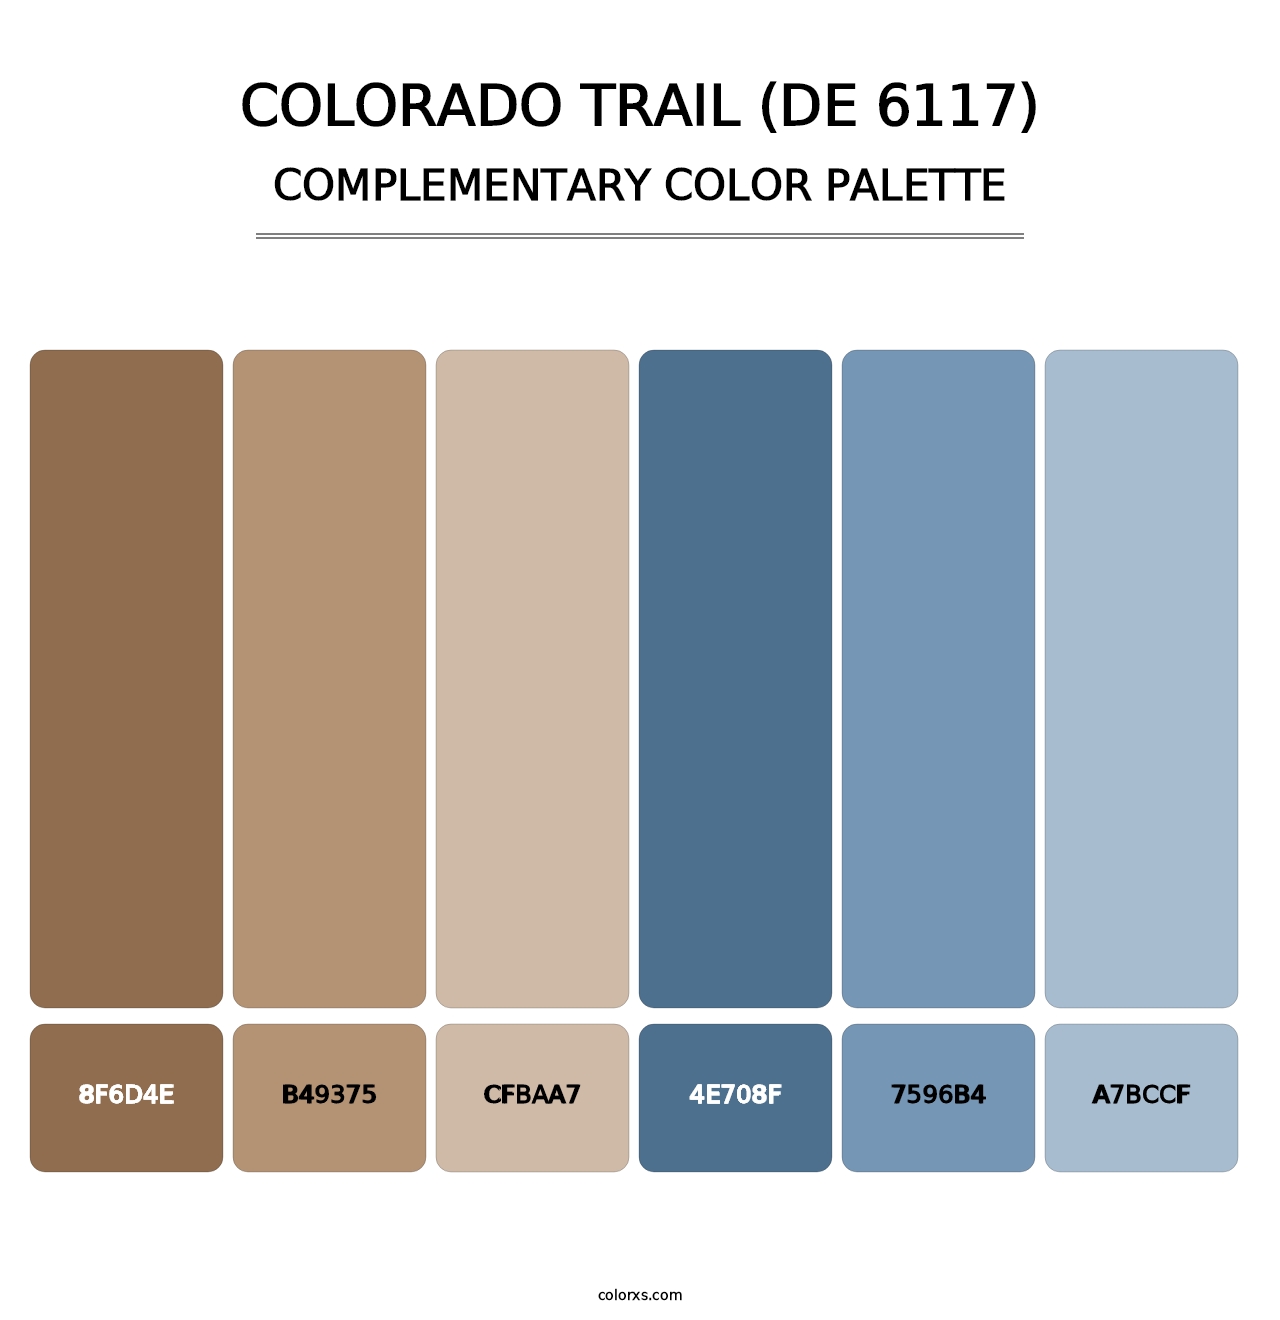 Colorado Trail (DE 6117) - Complementary Color Palette